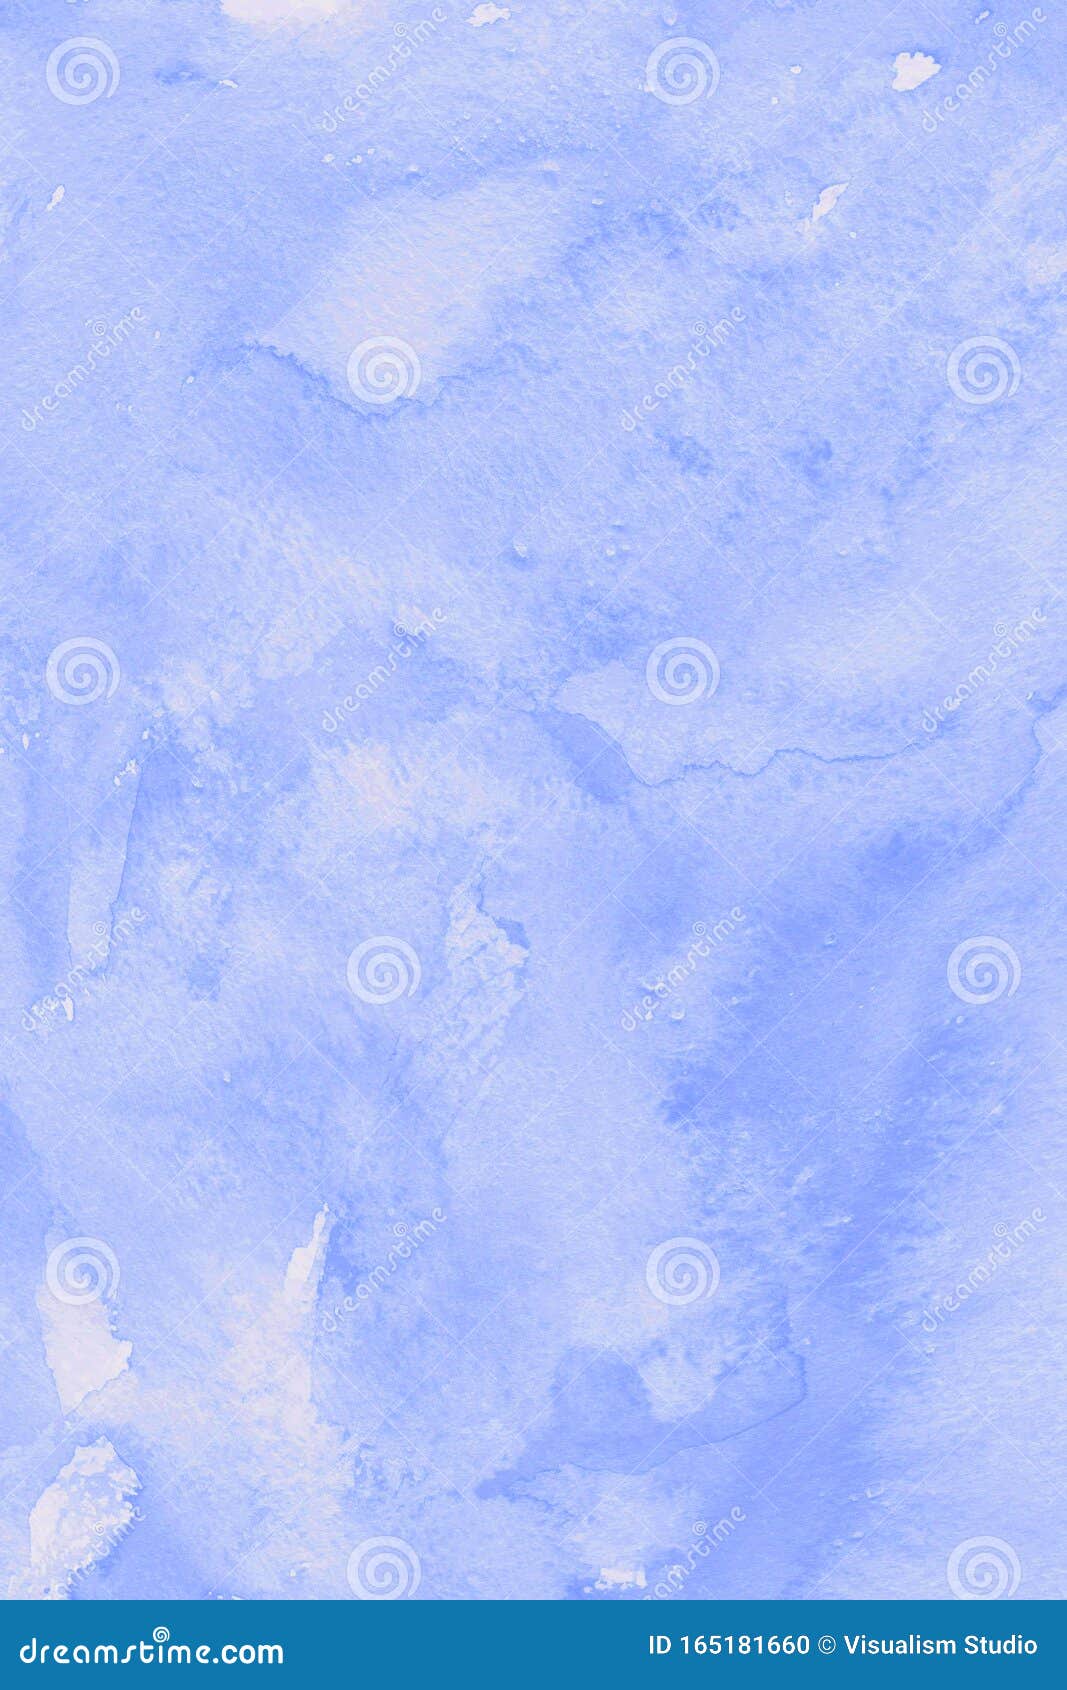 壁纸自然图像深蓝色白色抽象纹理水色背景图库存例证 插画包括有要素 看板卡 本质 抽象 现有量